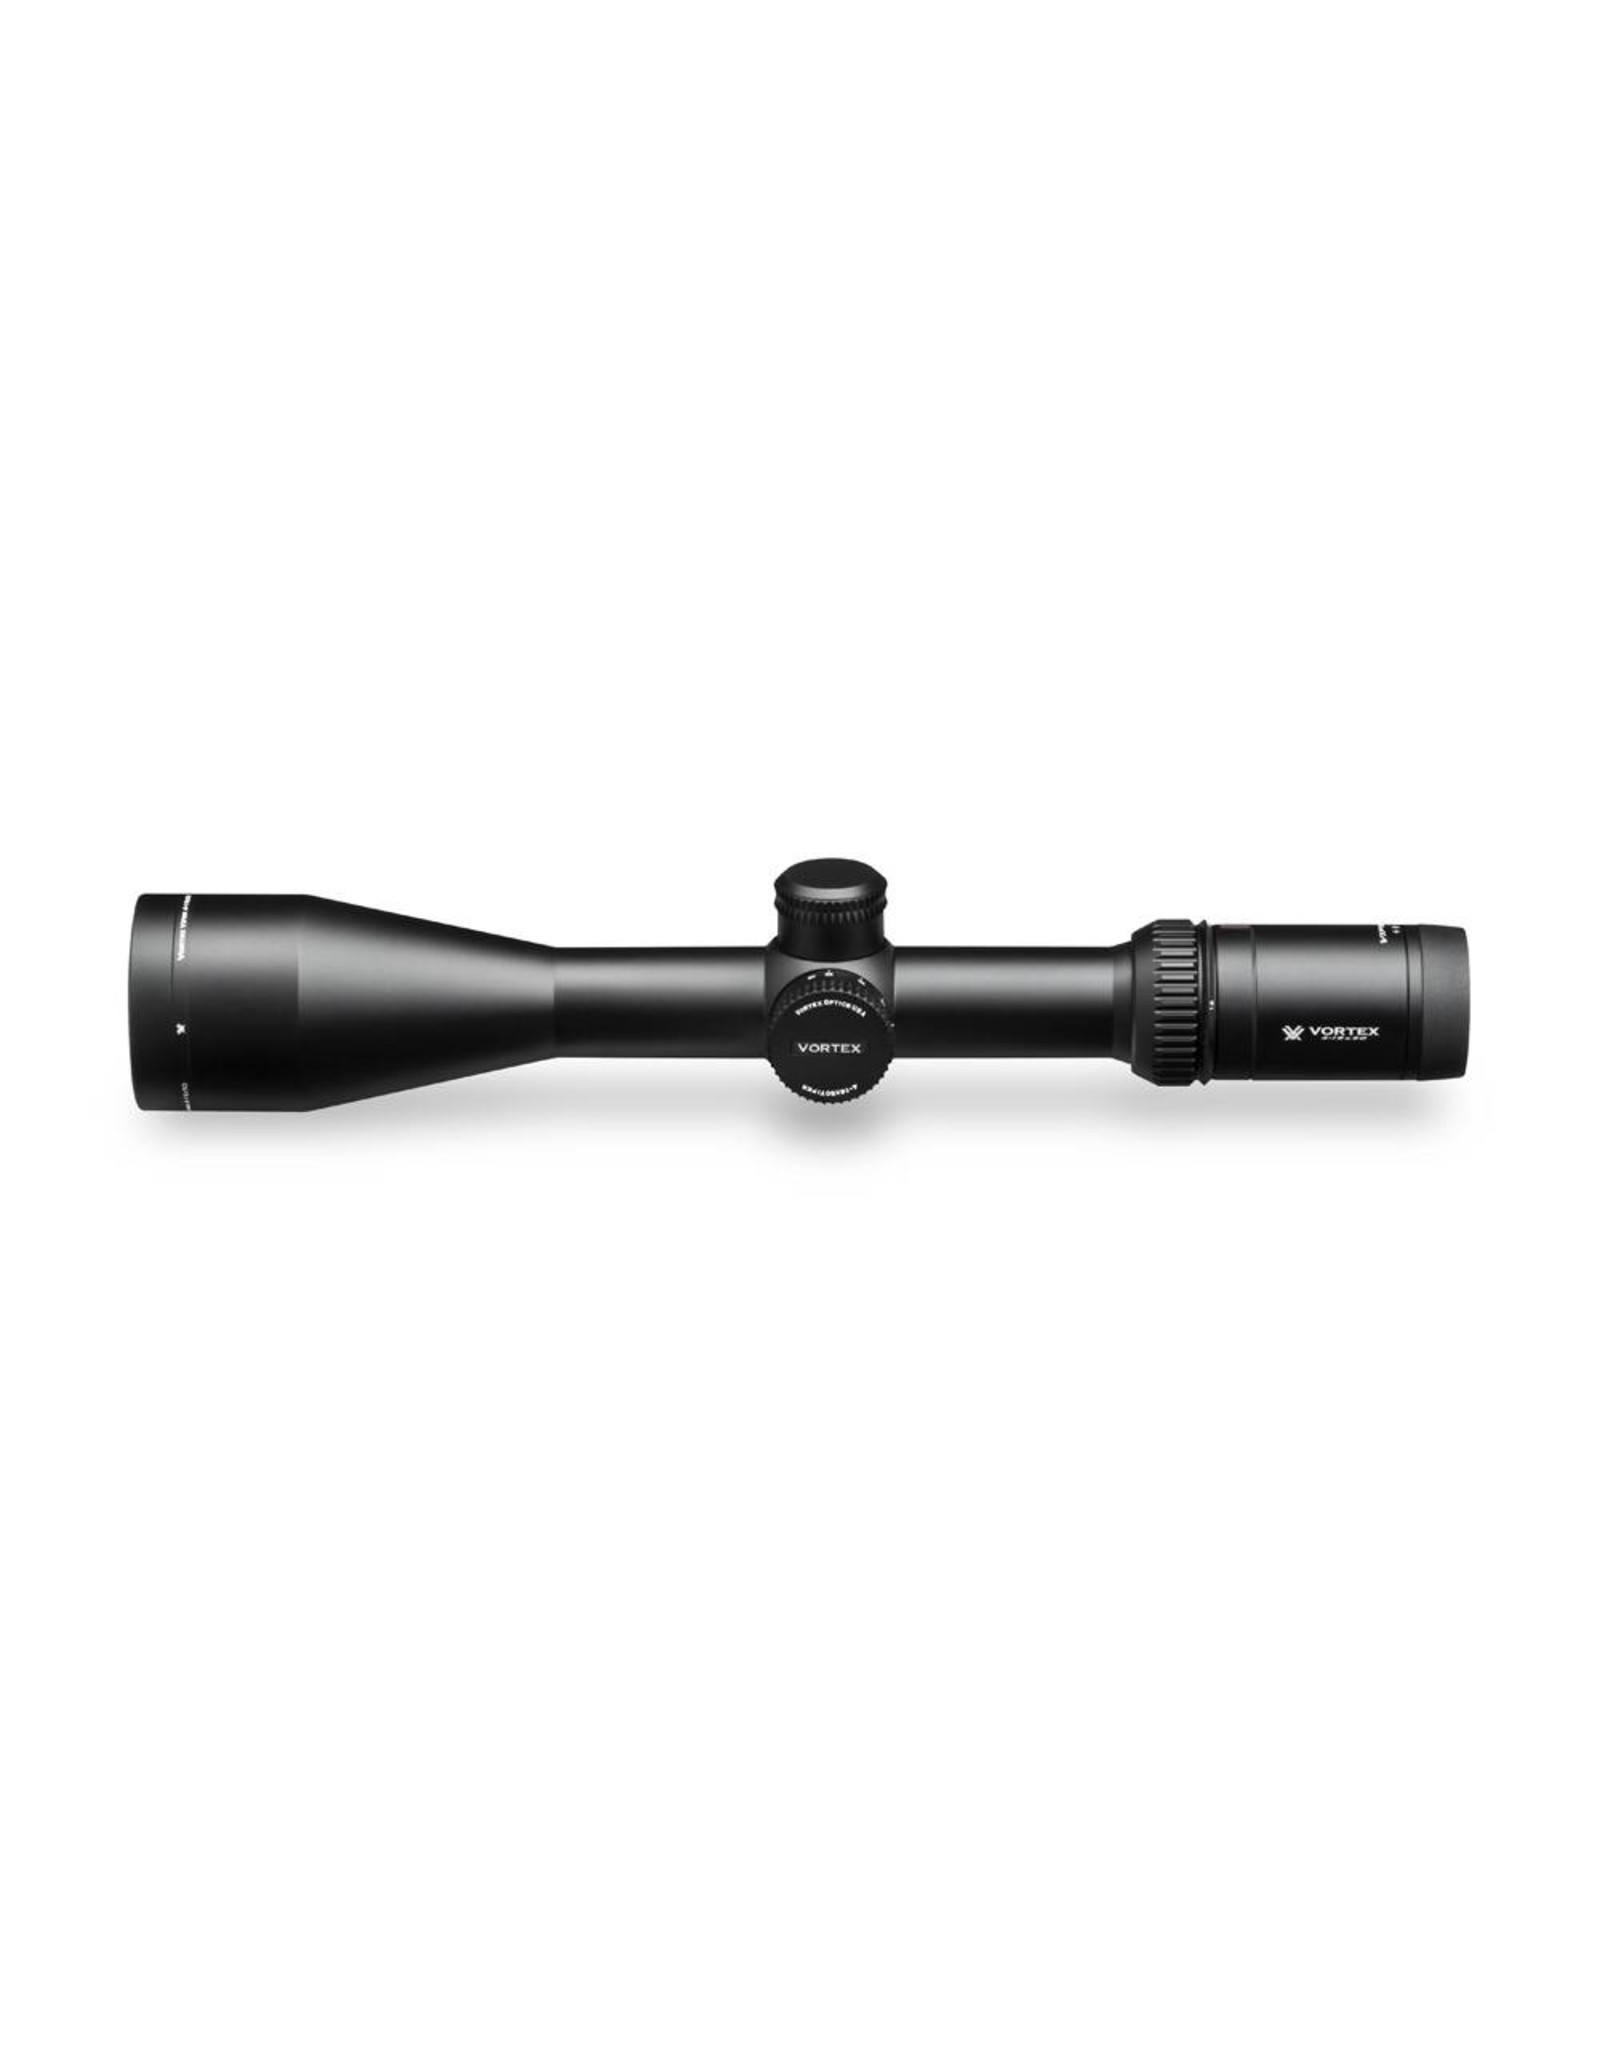 Vortex Vortex Viper HS 4-16x50 SFP Riflescope BDC